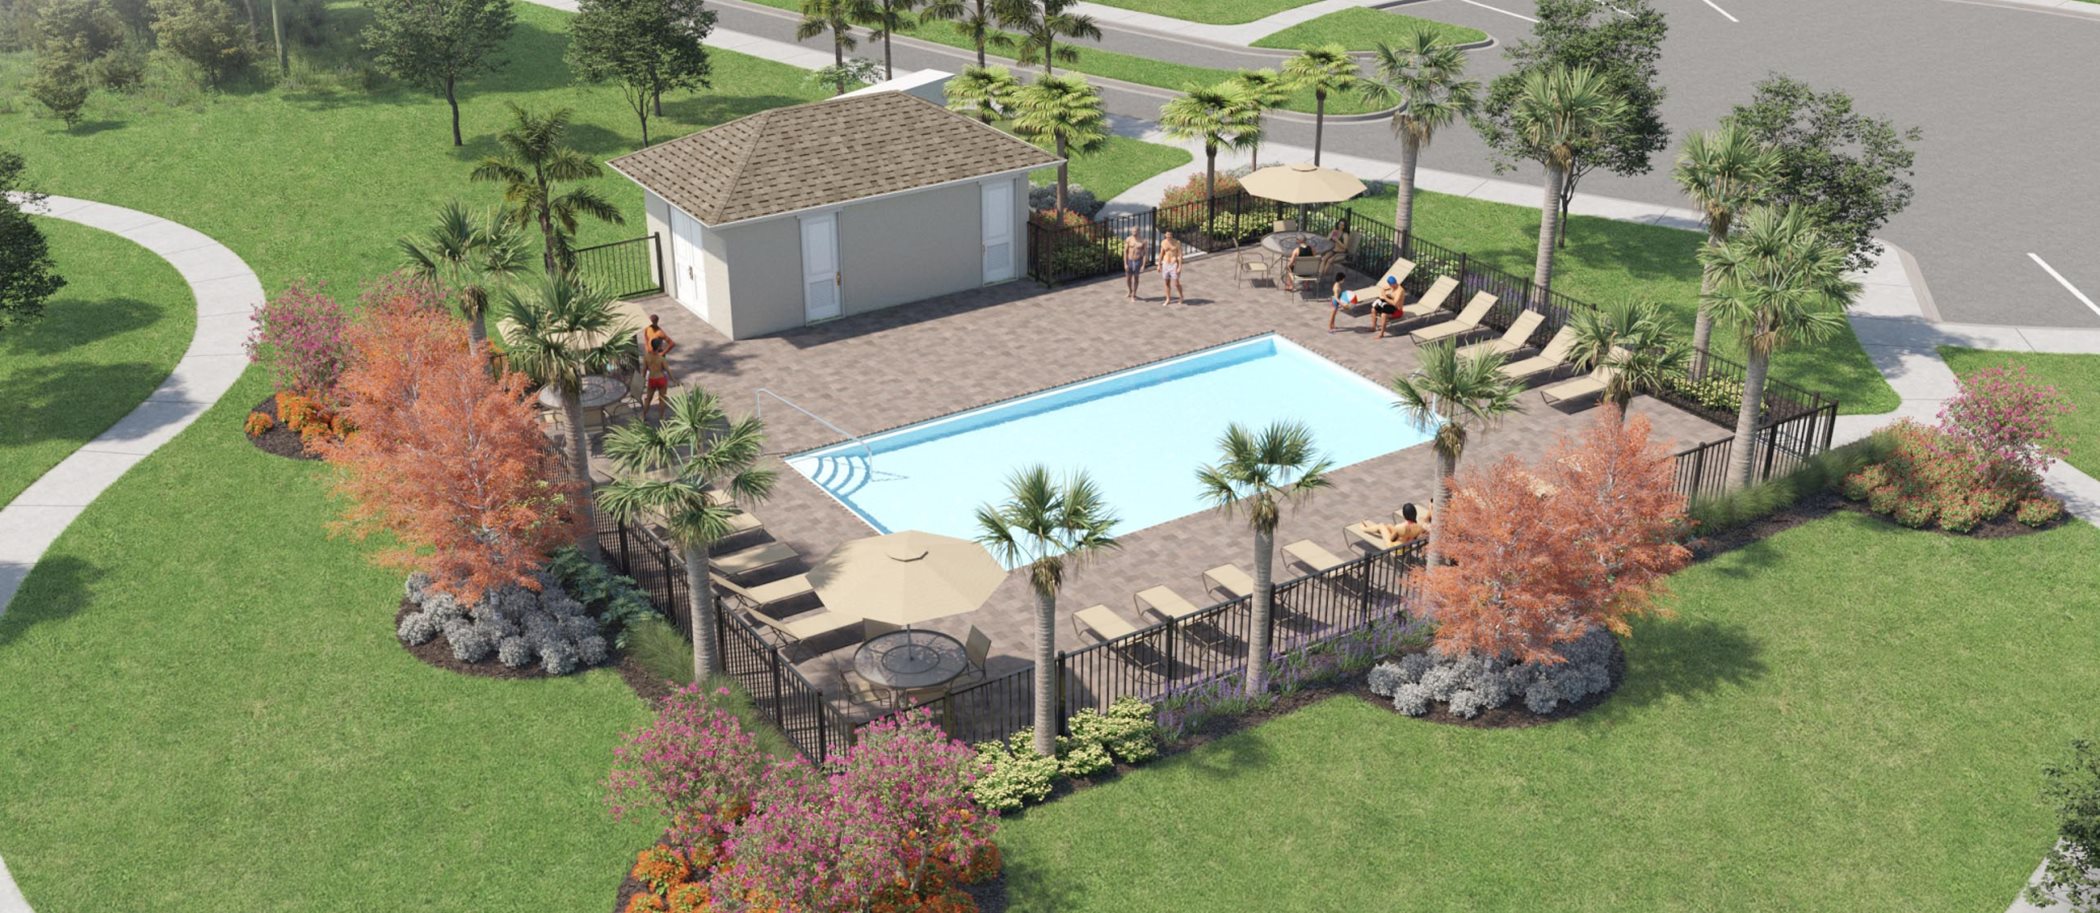 Glencove park pool rendering